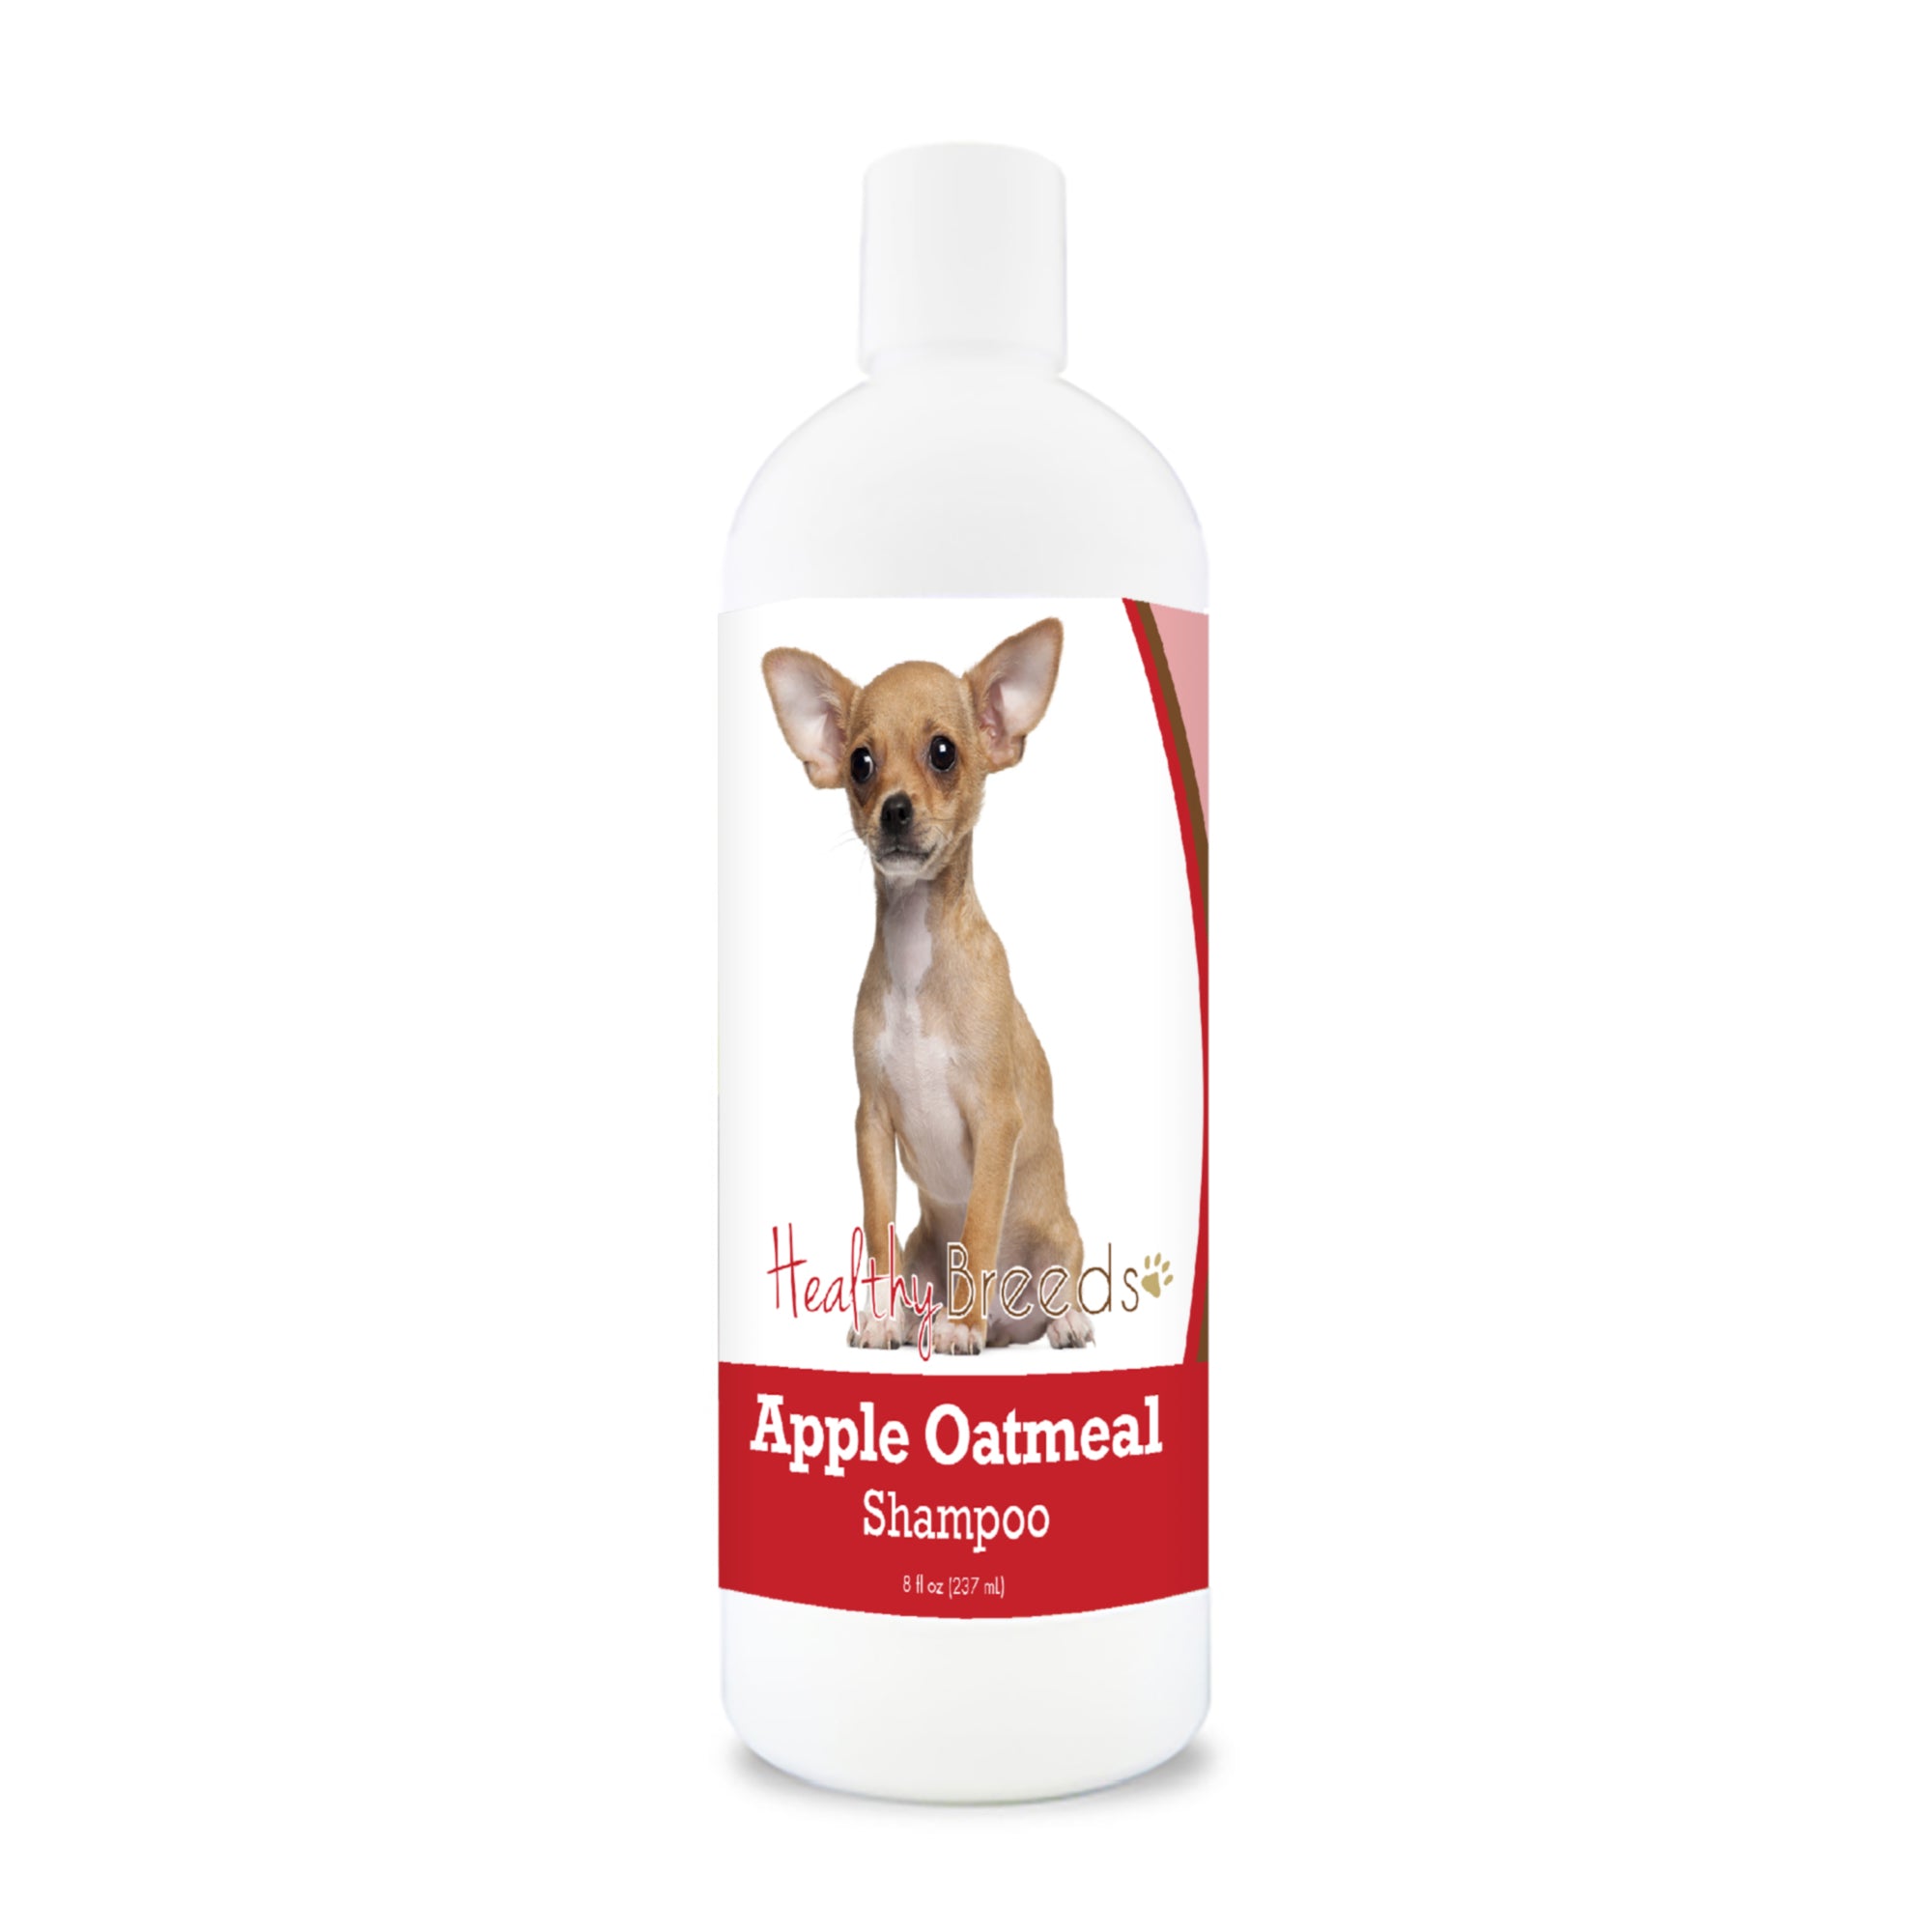 Chihuahua Apple Oatmeal Shampoo 8 oz